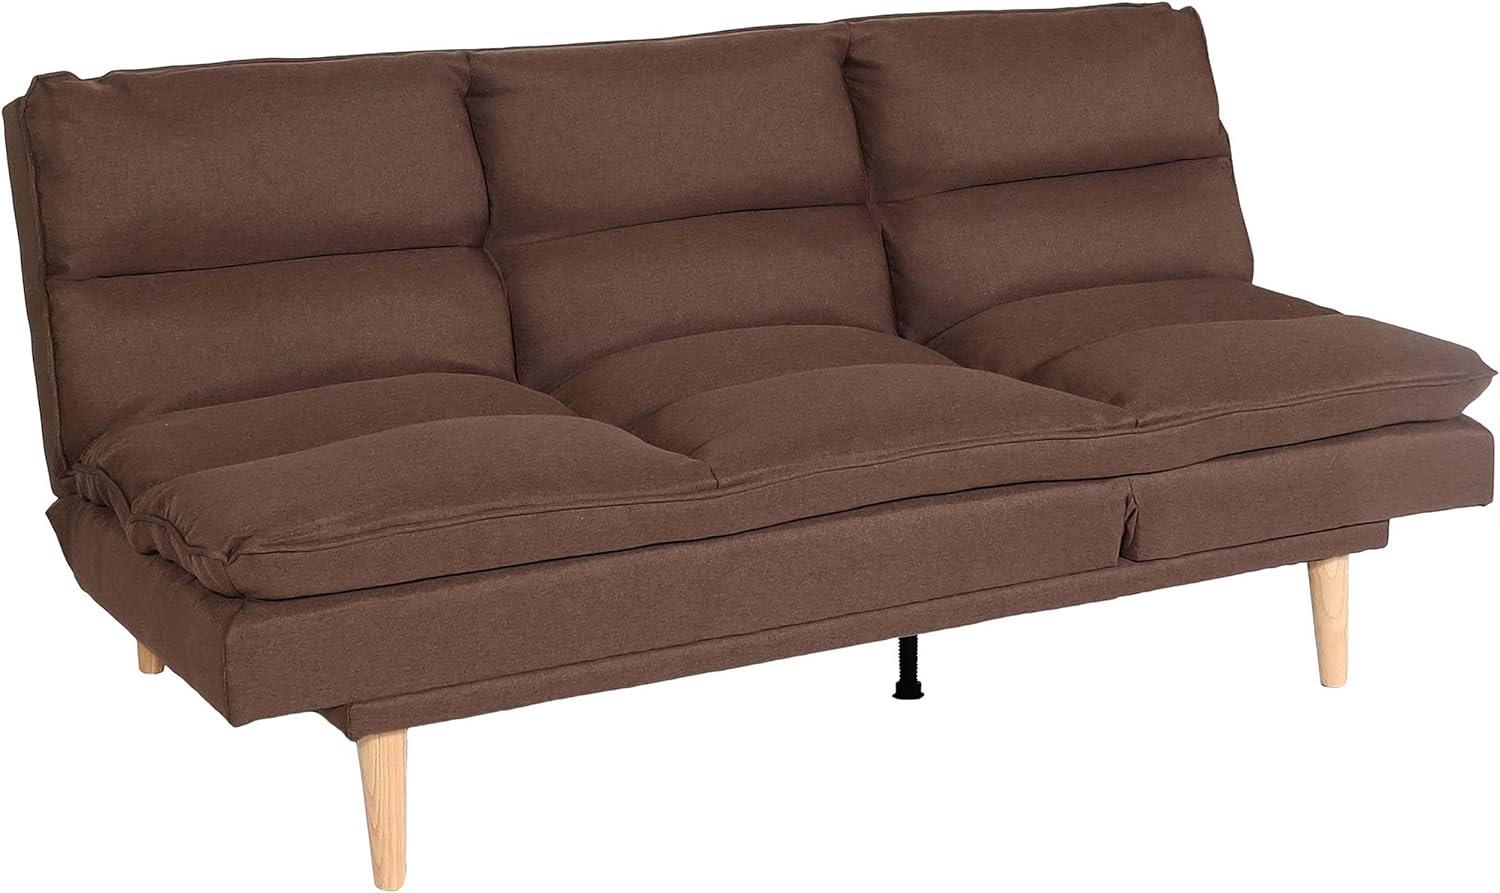 Schlafsofa HWC-M79, Gästebett Schlafcouch Couch Sofa, Schlaffunktion Liegefläche 180x110cm ~ Stoff/Textil braun Bild 1